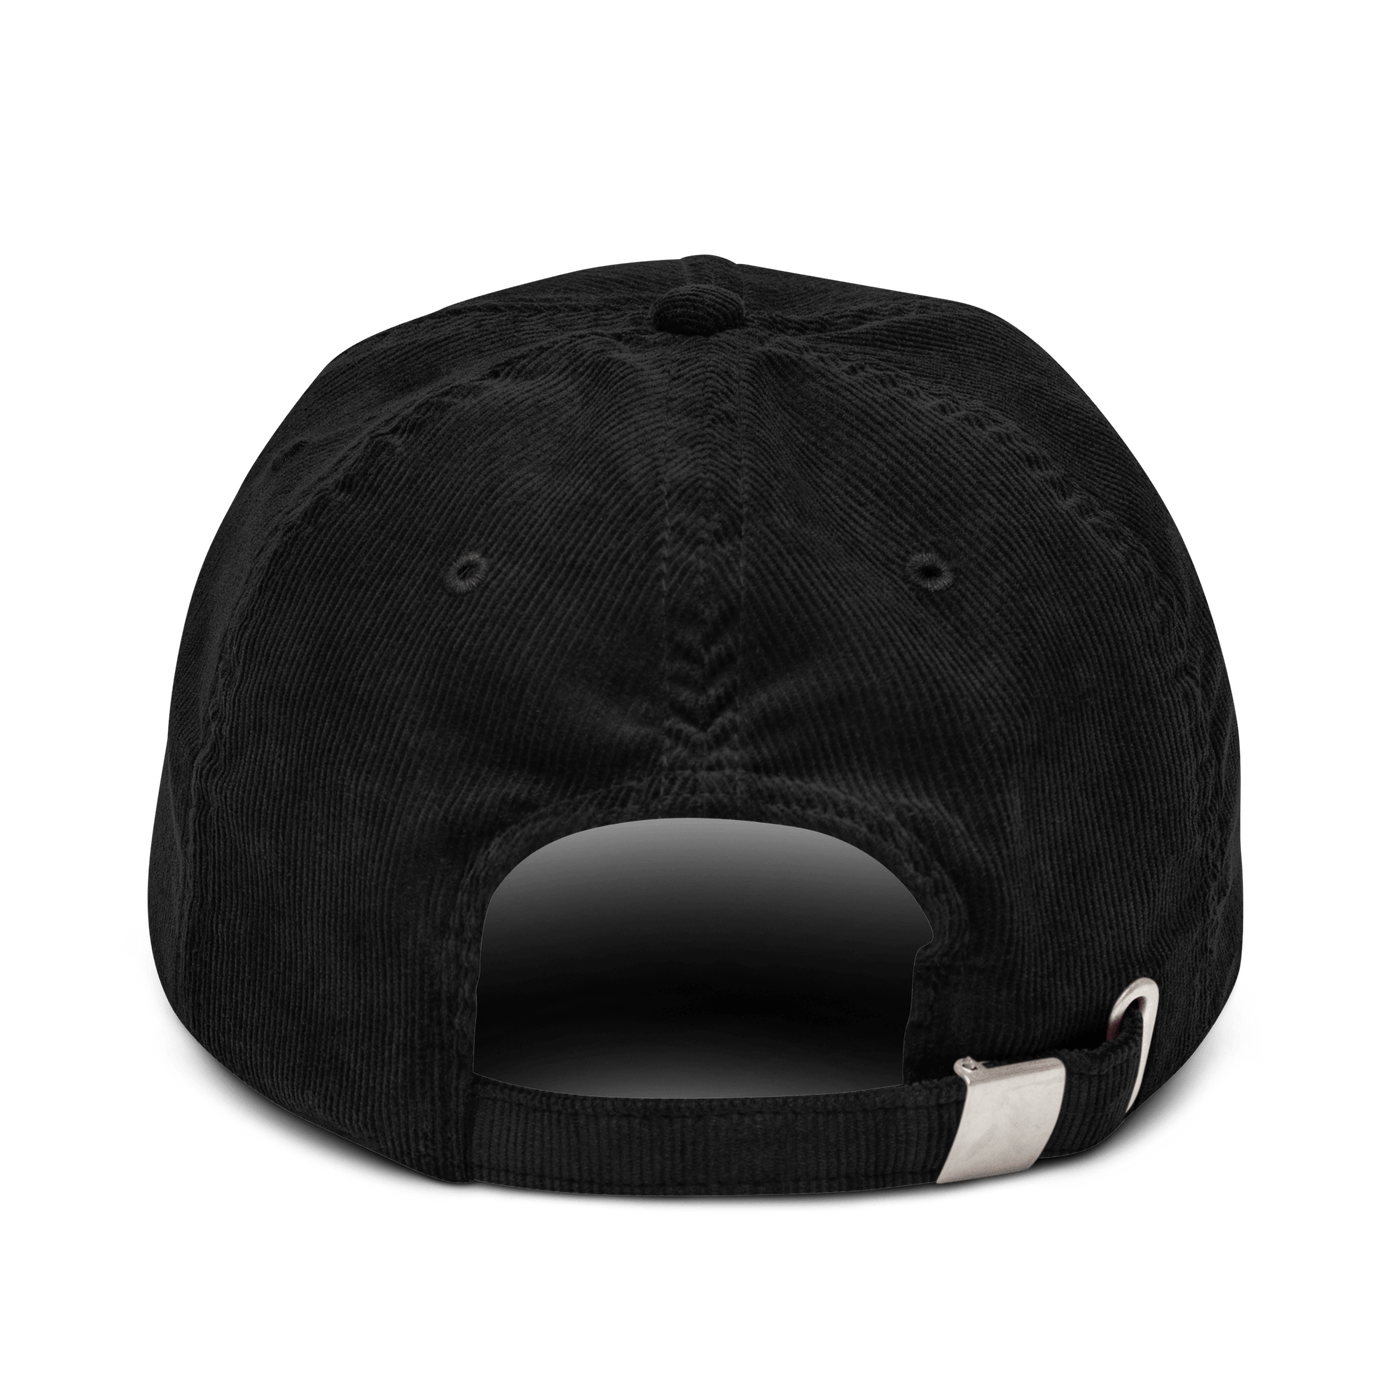 Buy Sea Chair Ten Corduroy hat - Black - - Just Another Cap Store